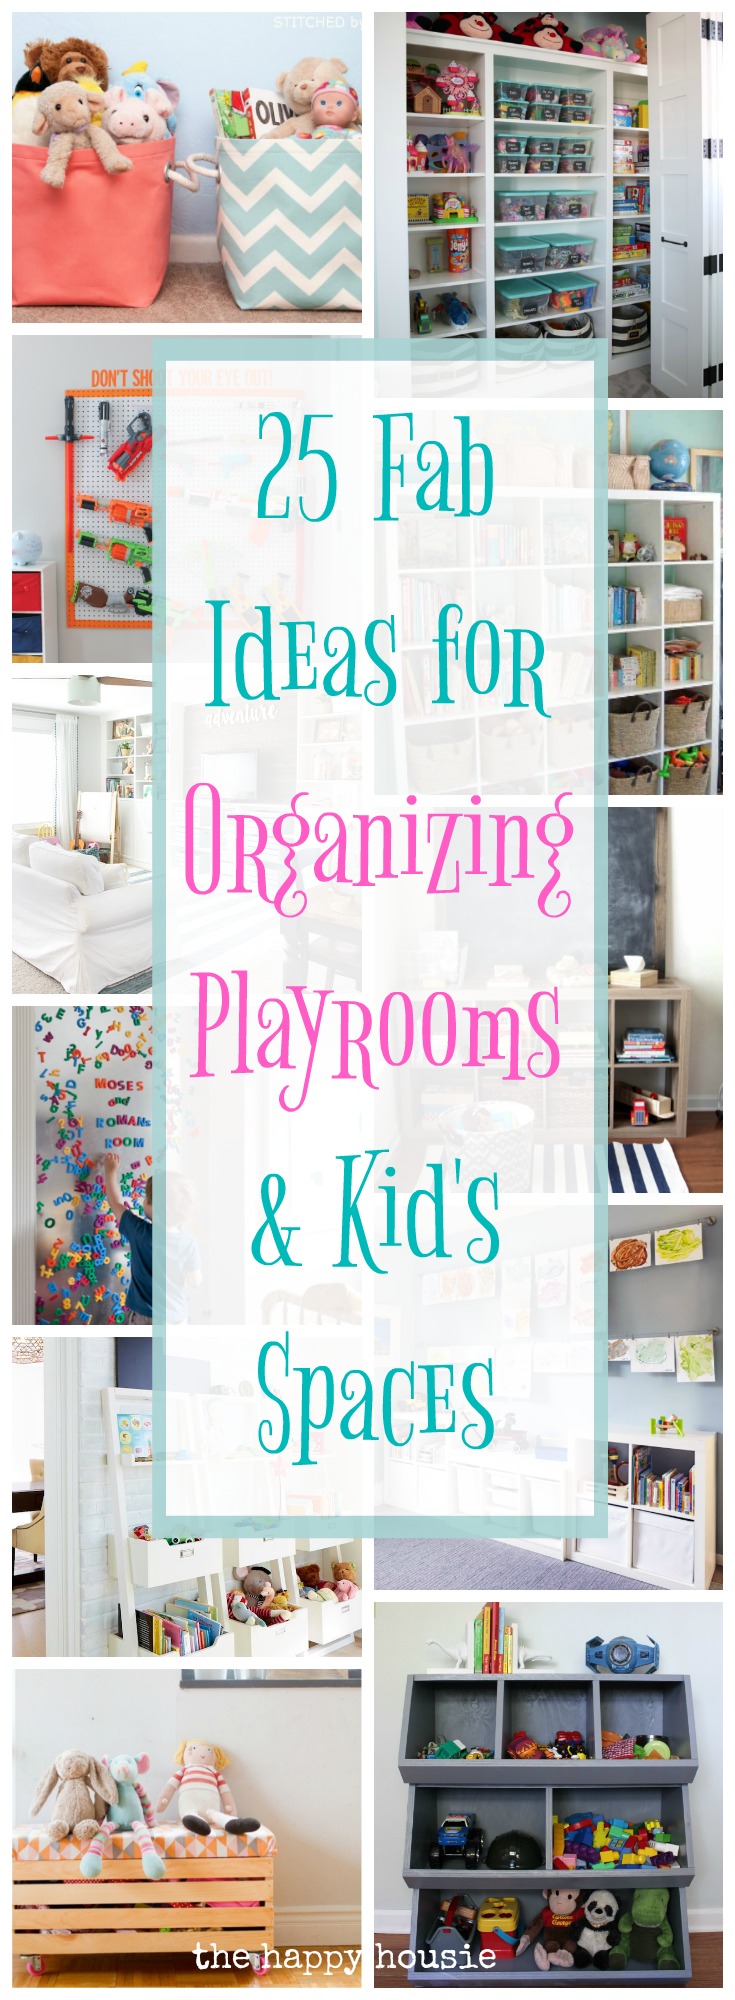 toy room organization ideas